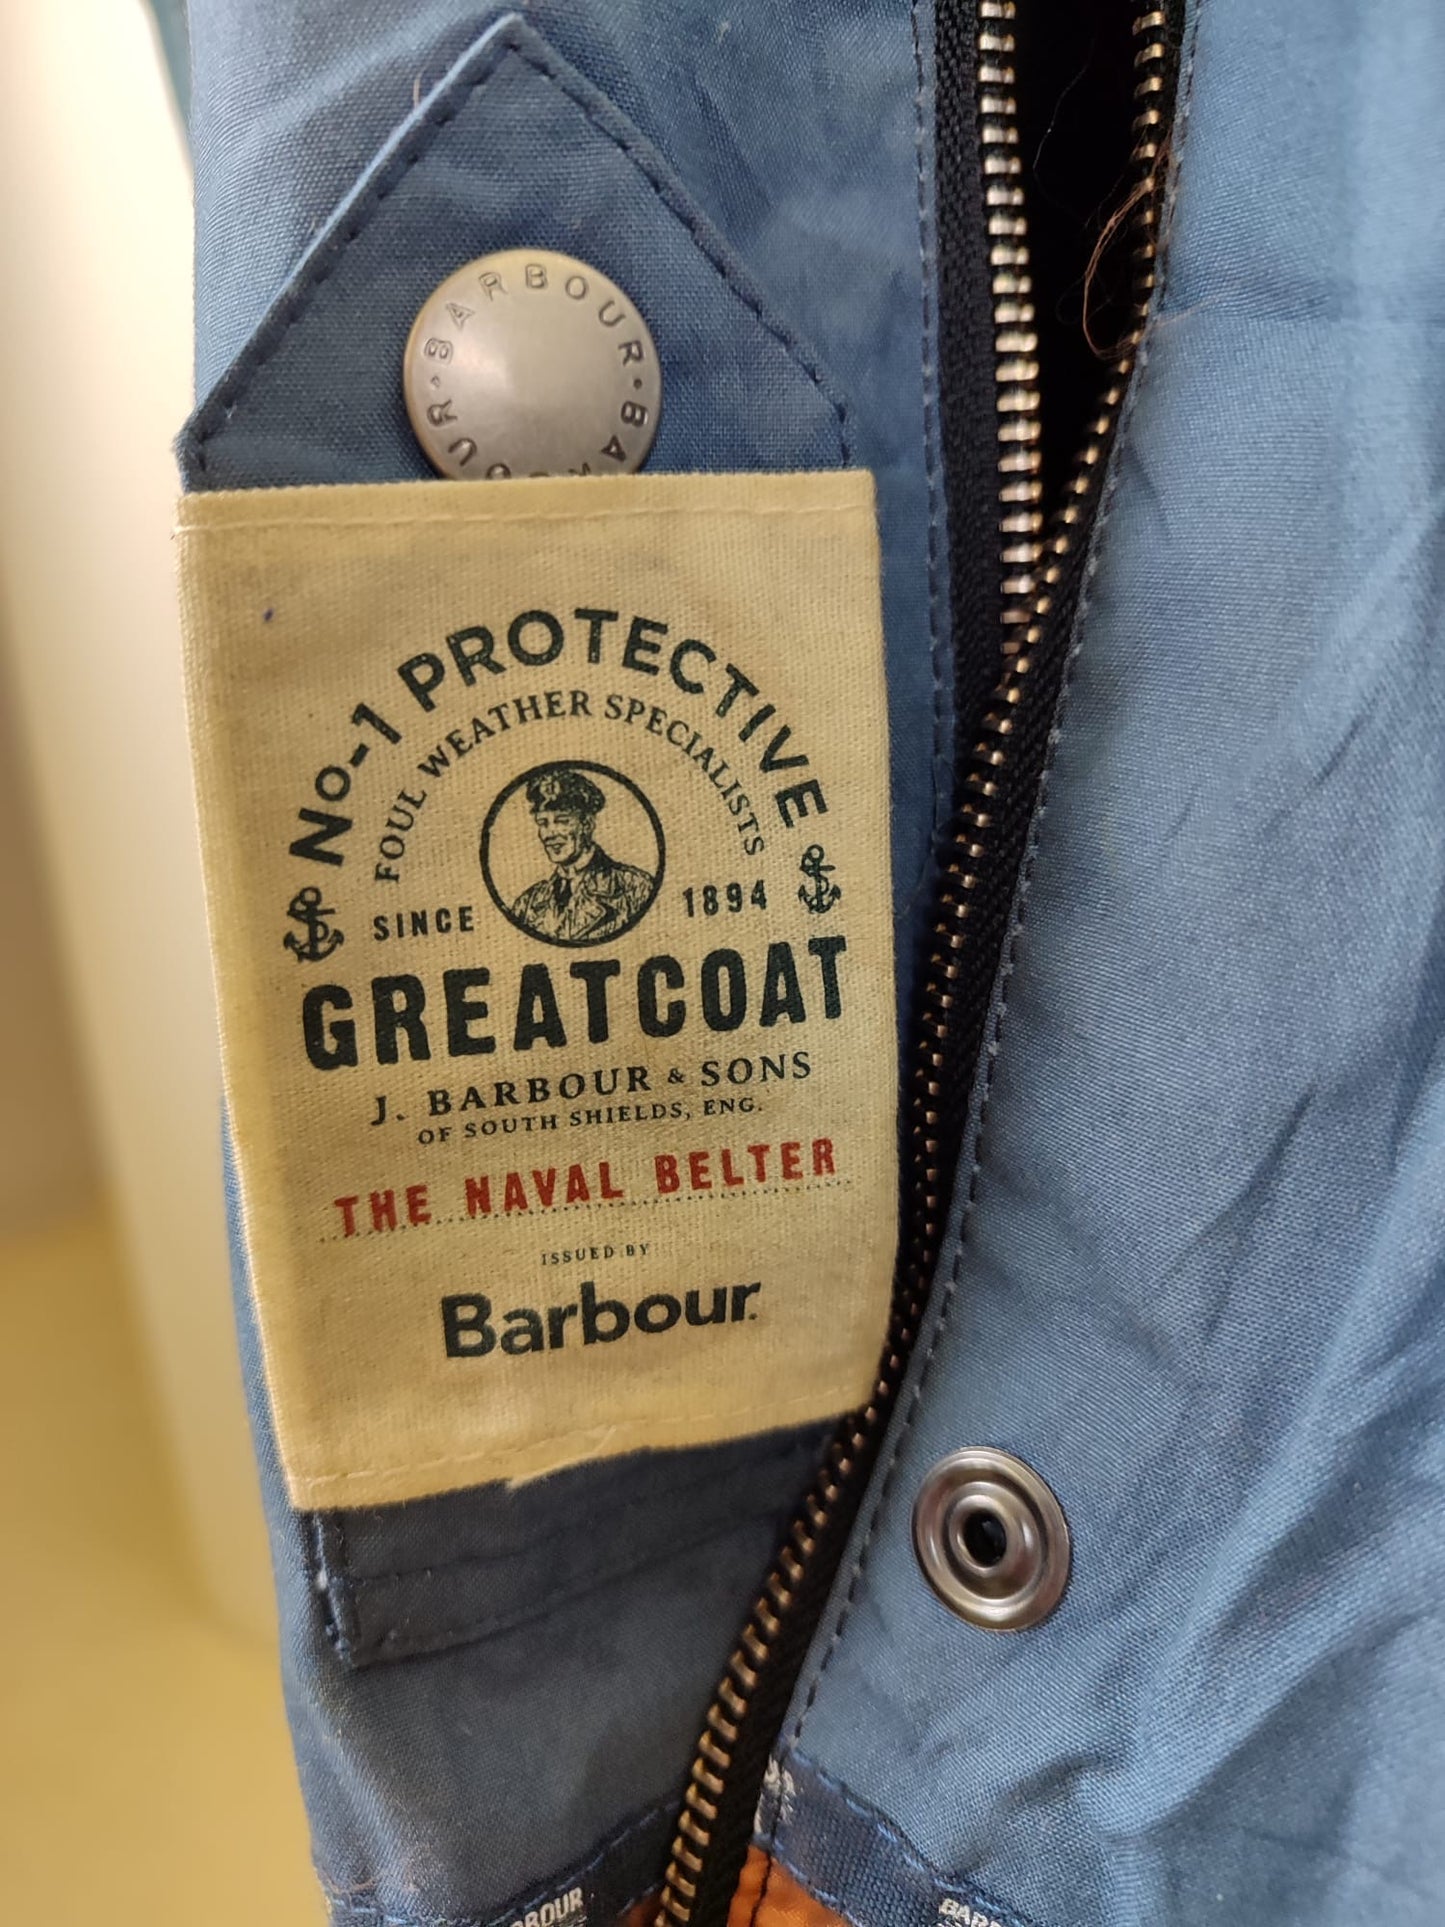 Giacca da uomo Blu Benkirk cerato taglia XL - Man Navy wax Benkirk jacket size XL